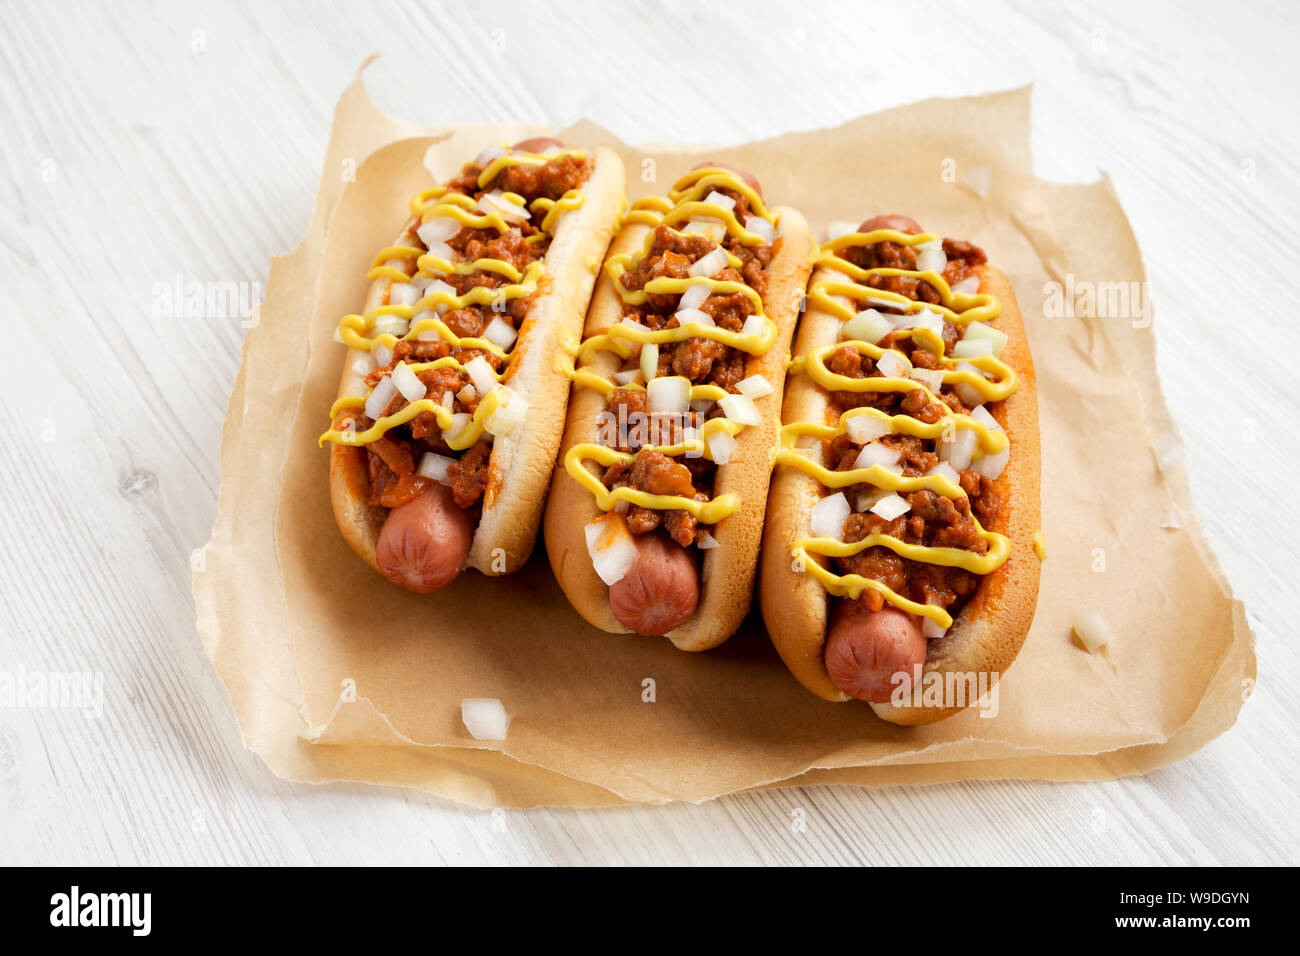 Bollo con perro caliente, salchicha para perros calientes de coney island  chili dog estilo chile perrito caliente, hot dog, comida, comida americana  png